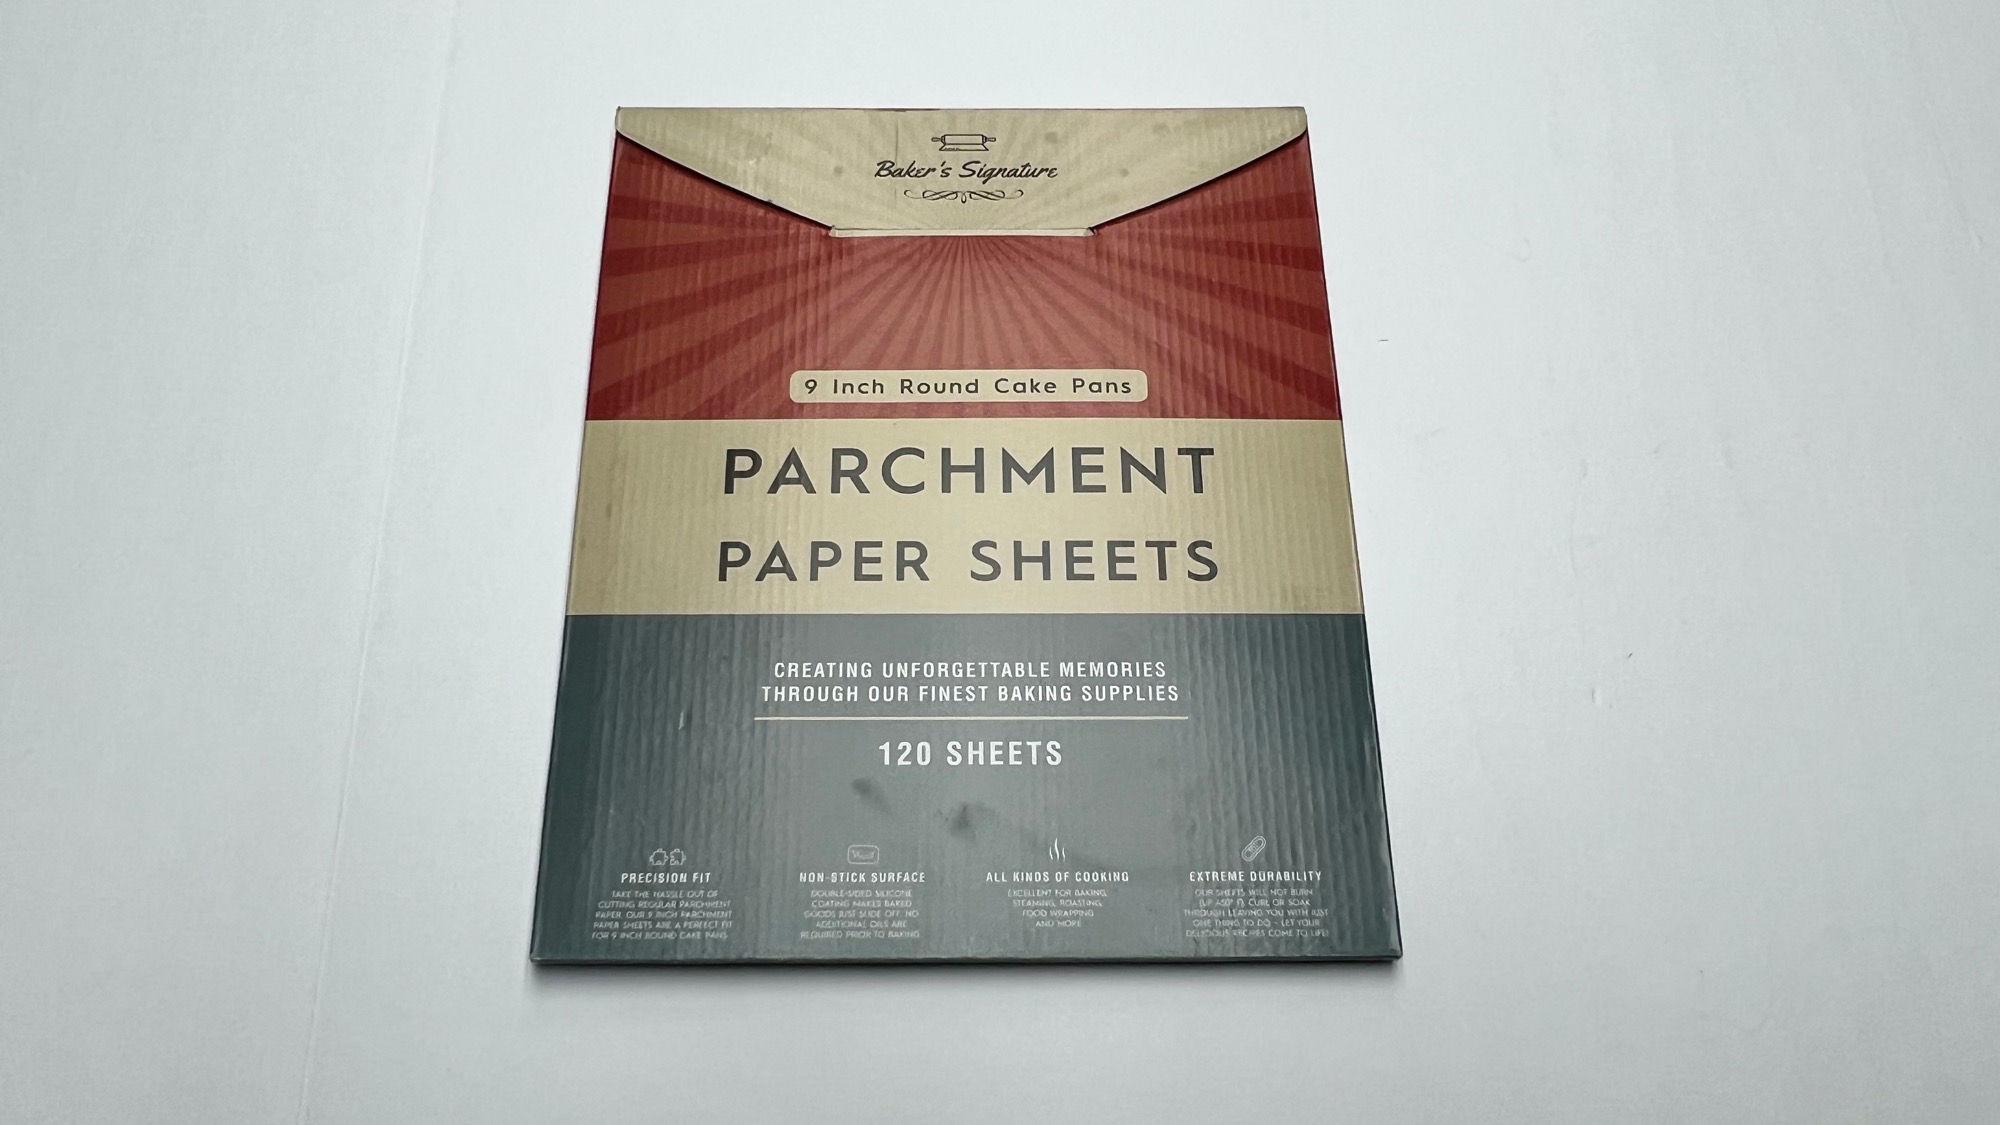 Baker's Signature Parchment Paper Sheets